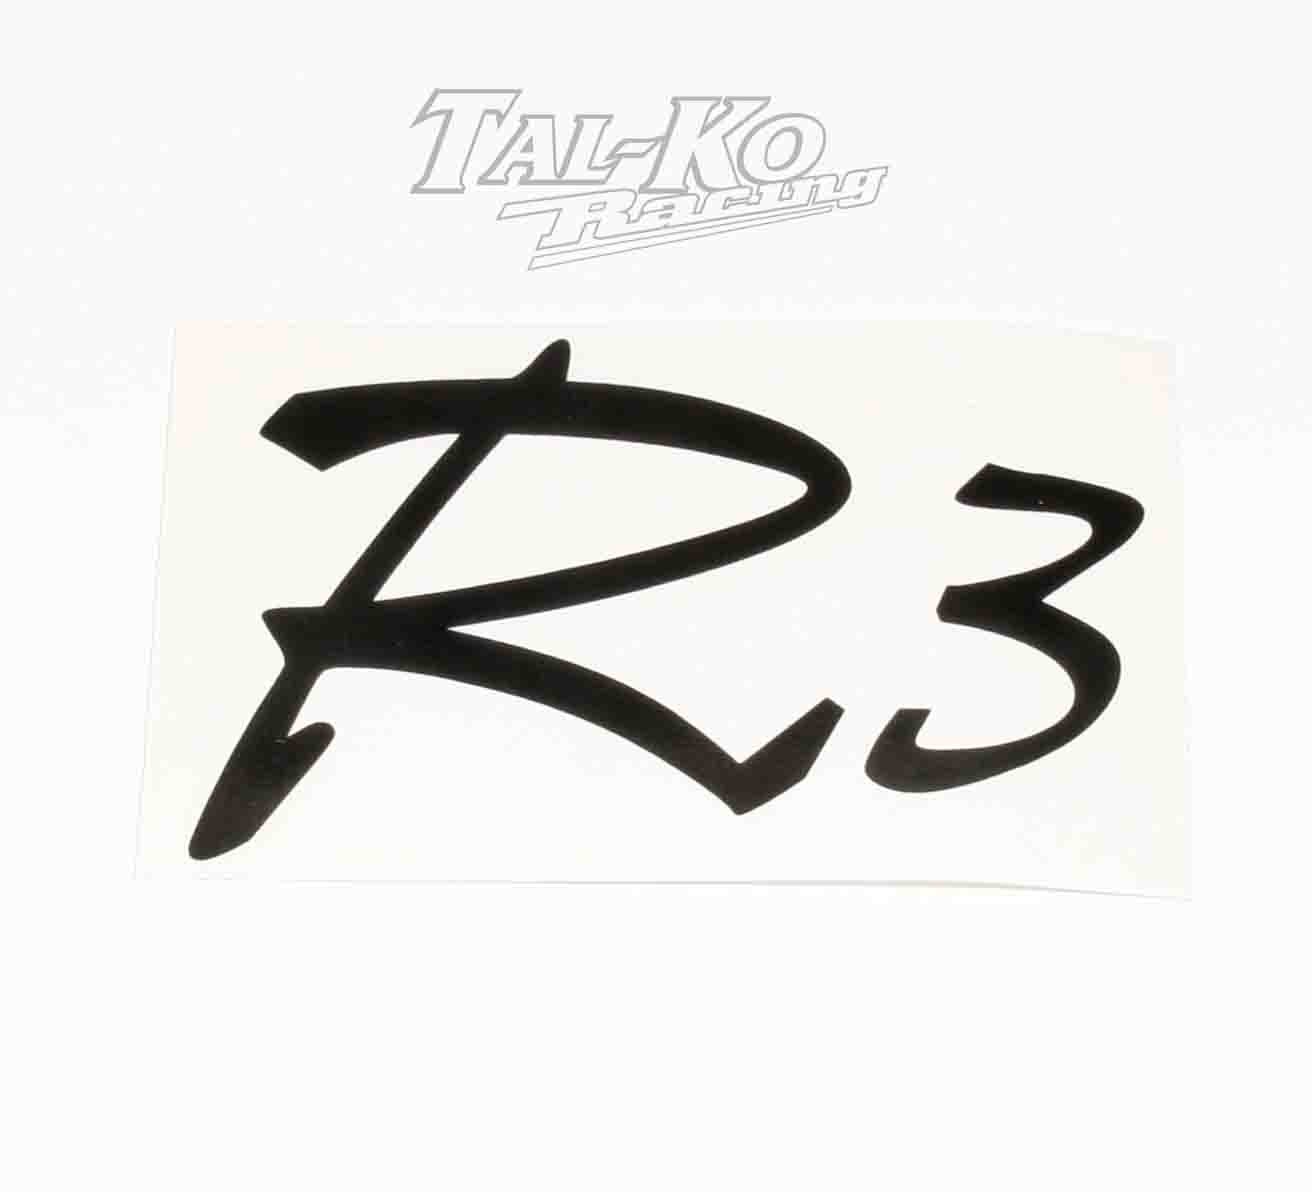 R3 RAIDER STICKER DECAL 125 x 80